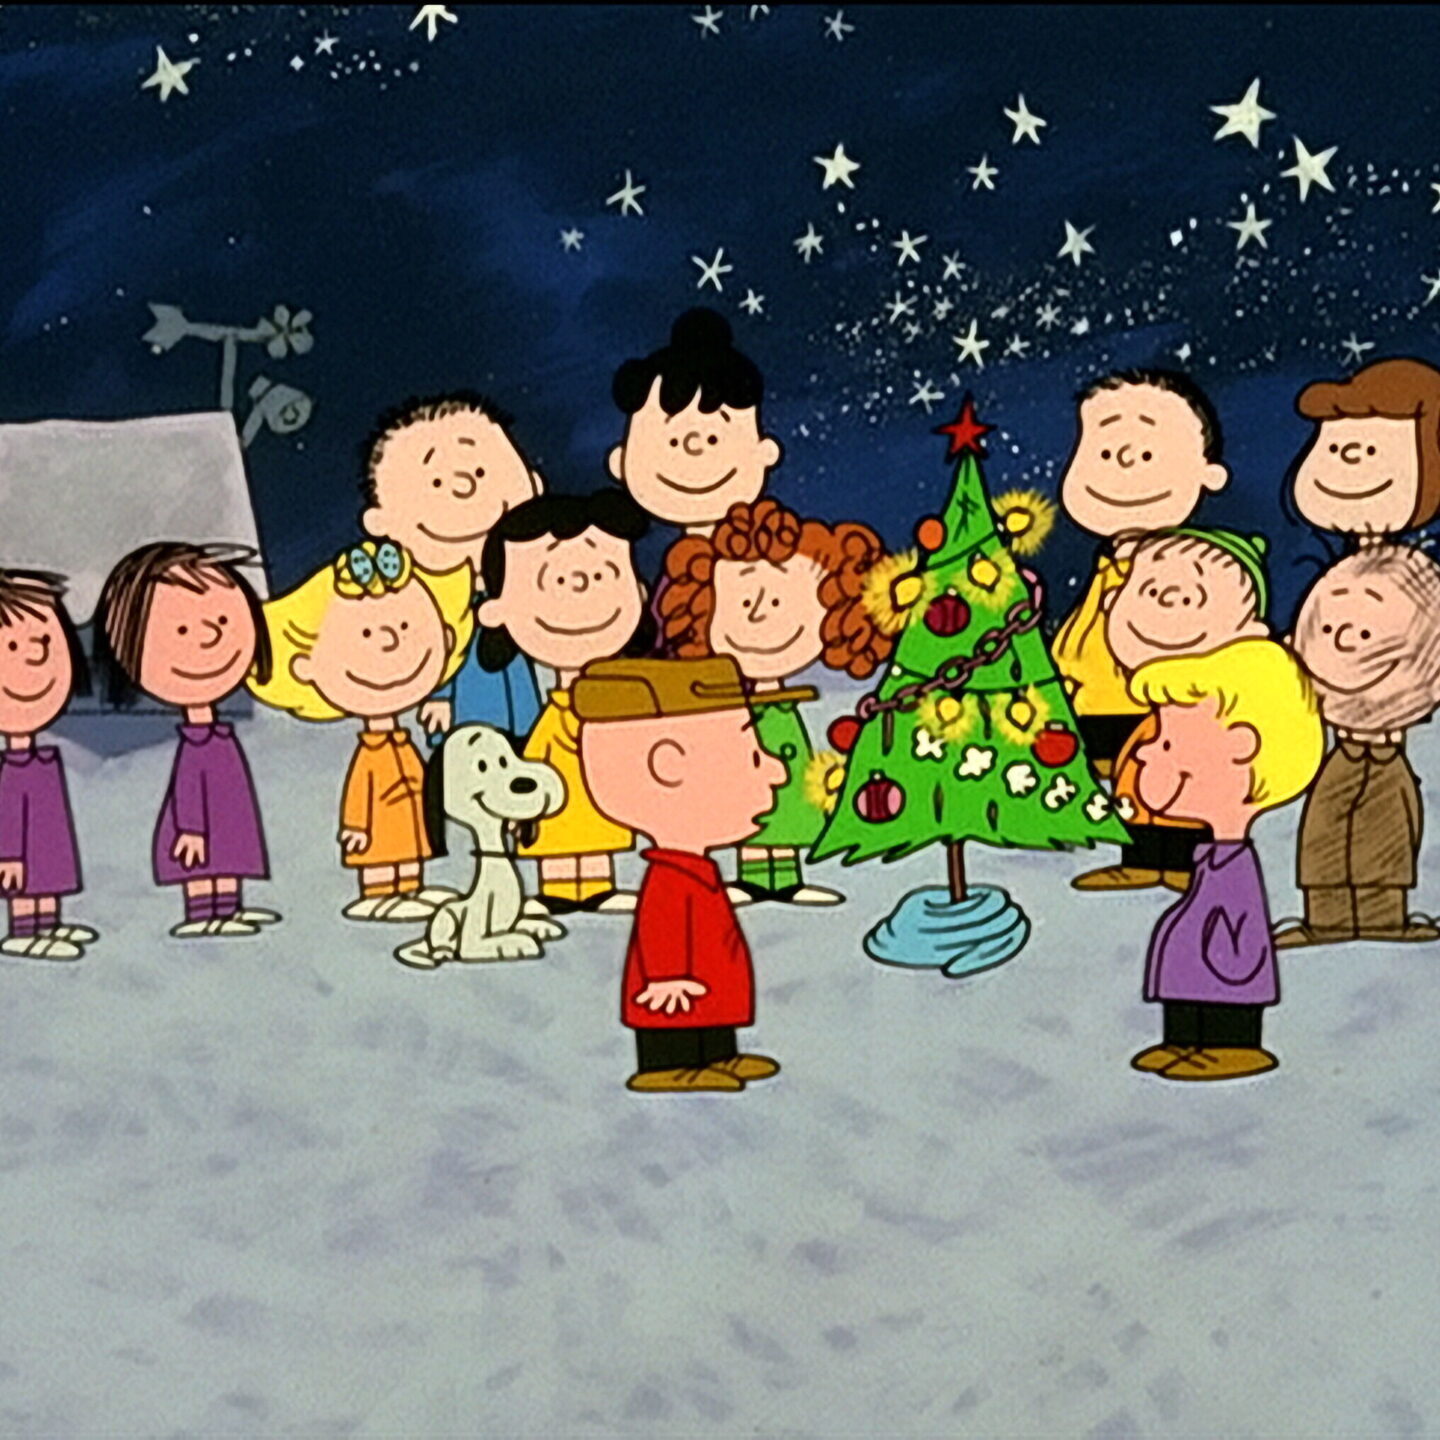 <p>A-Charlie-Brown-Christmas-image</p>
